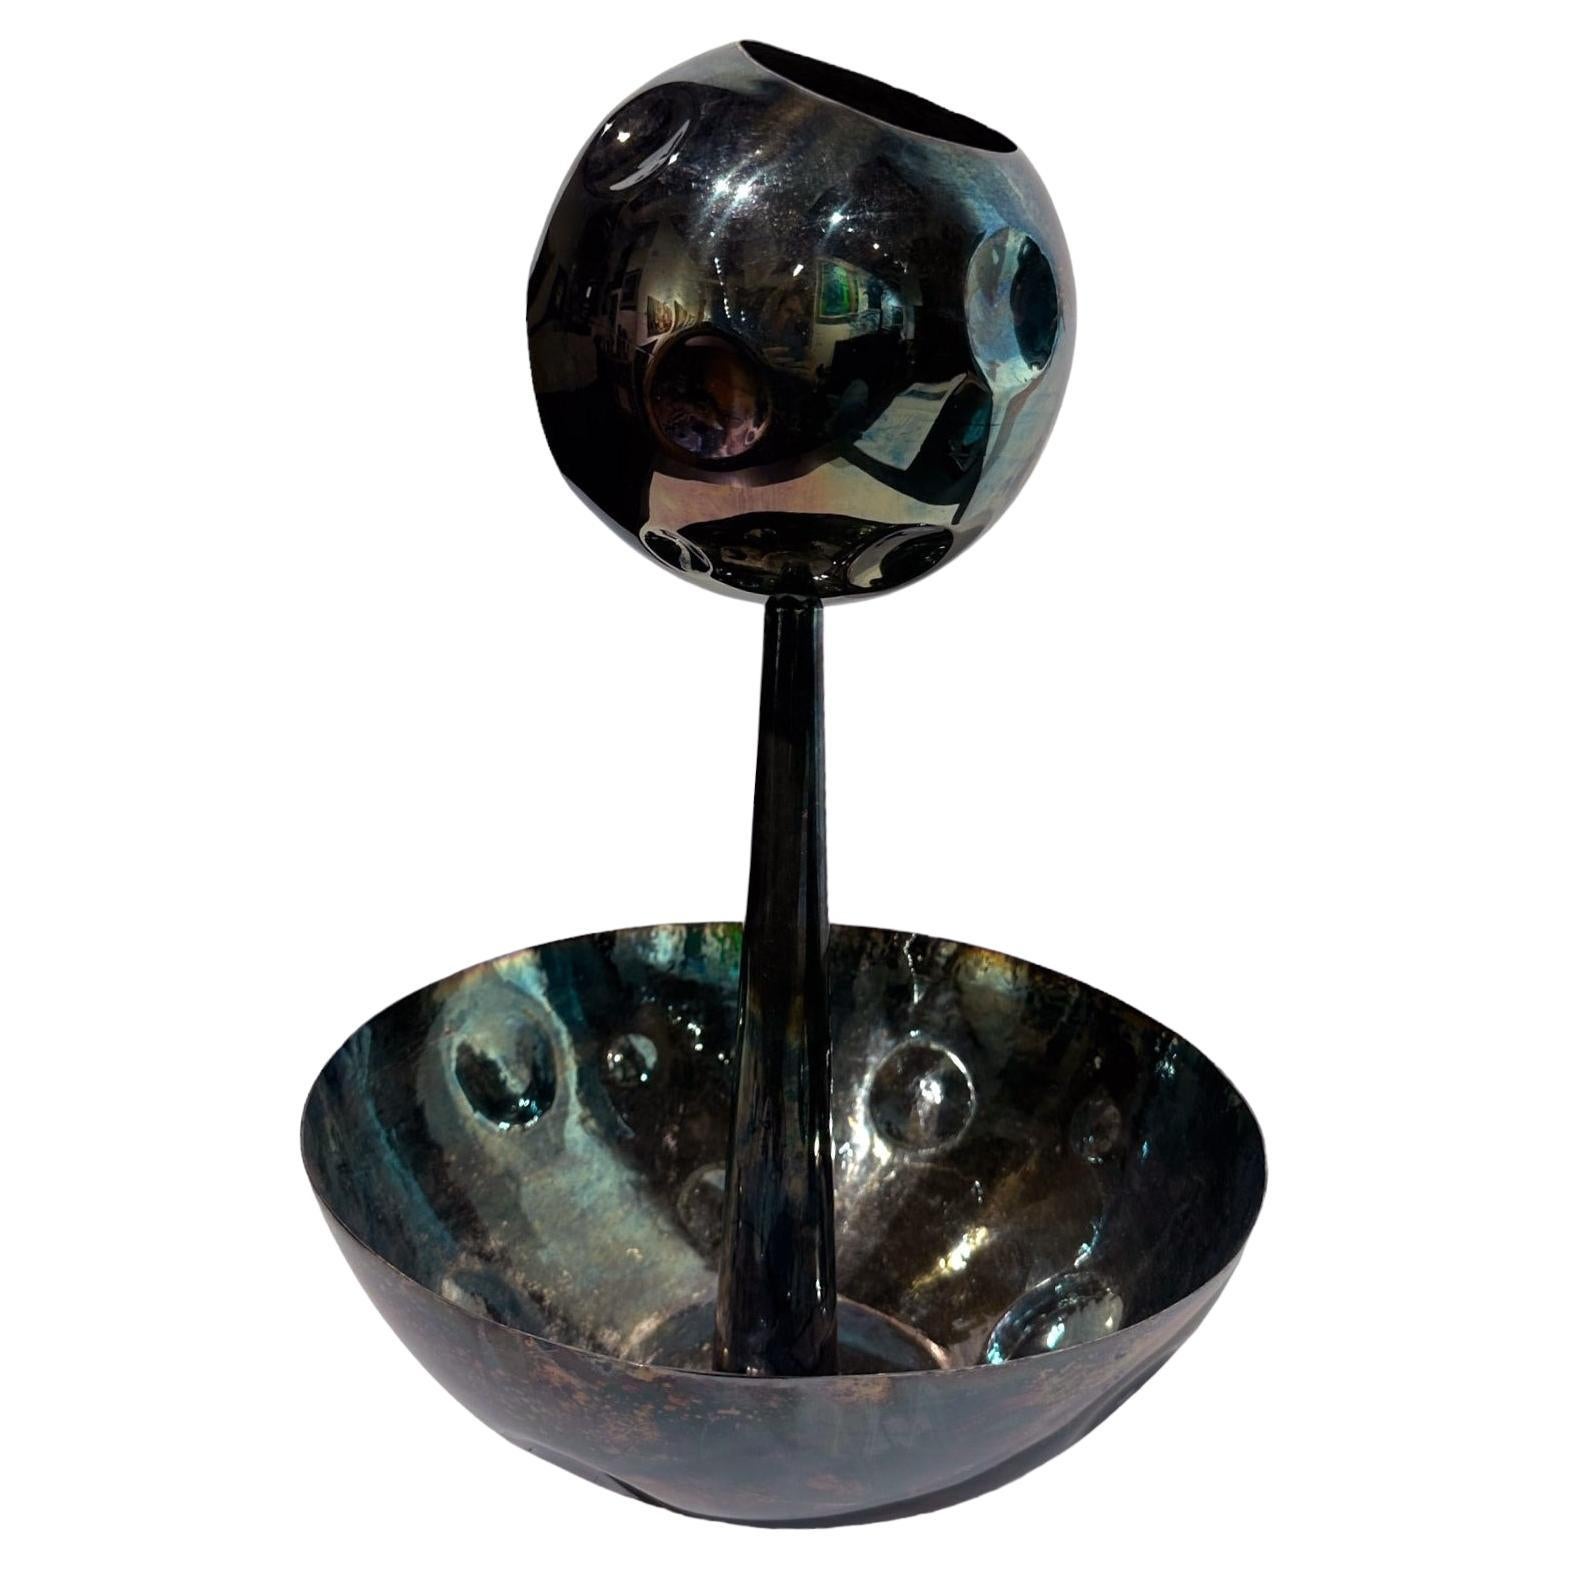 Tarnished Metal Vessel/Bowl, Sculptural Object by Raju Peddada - "Lacuna"